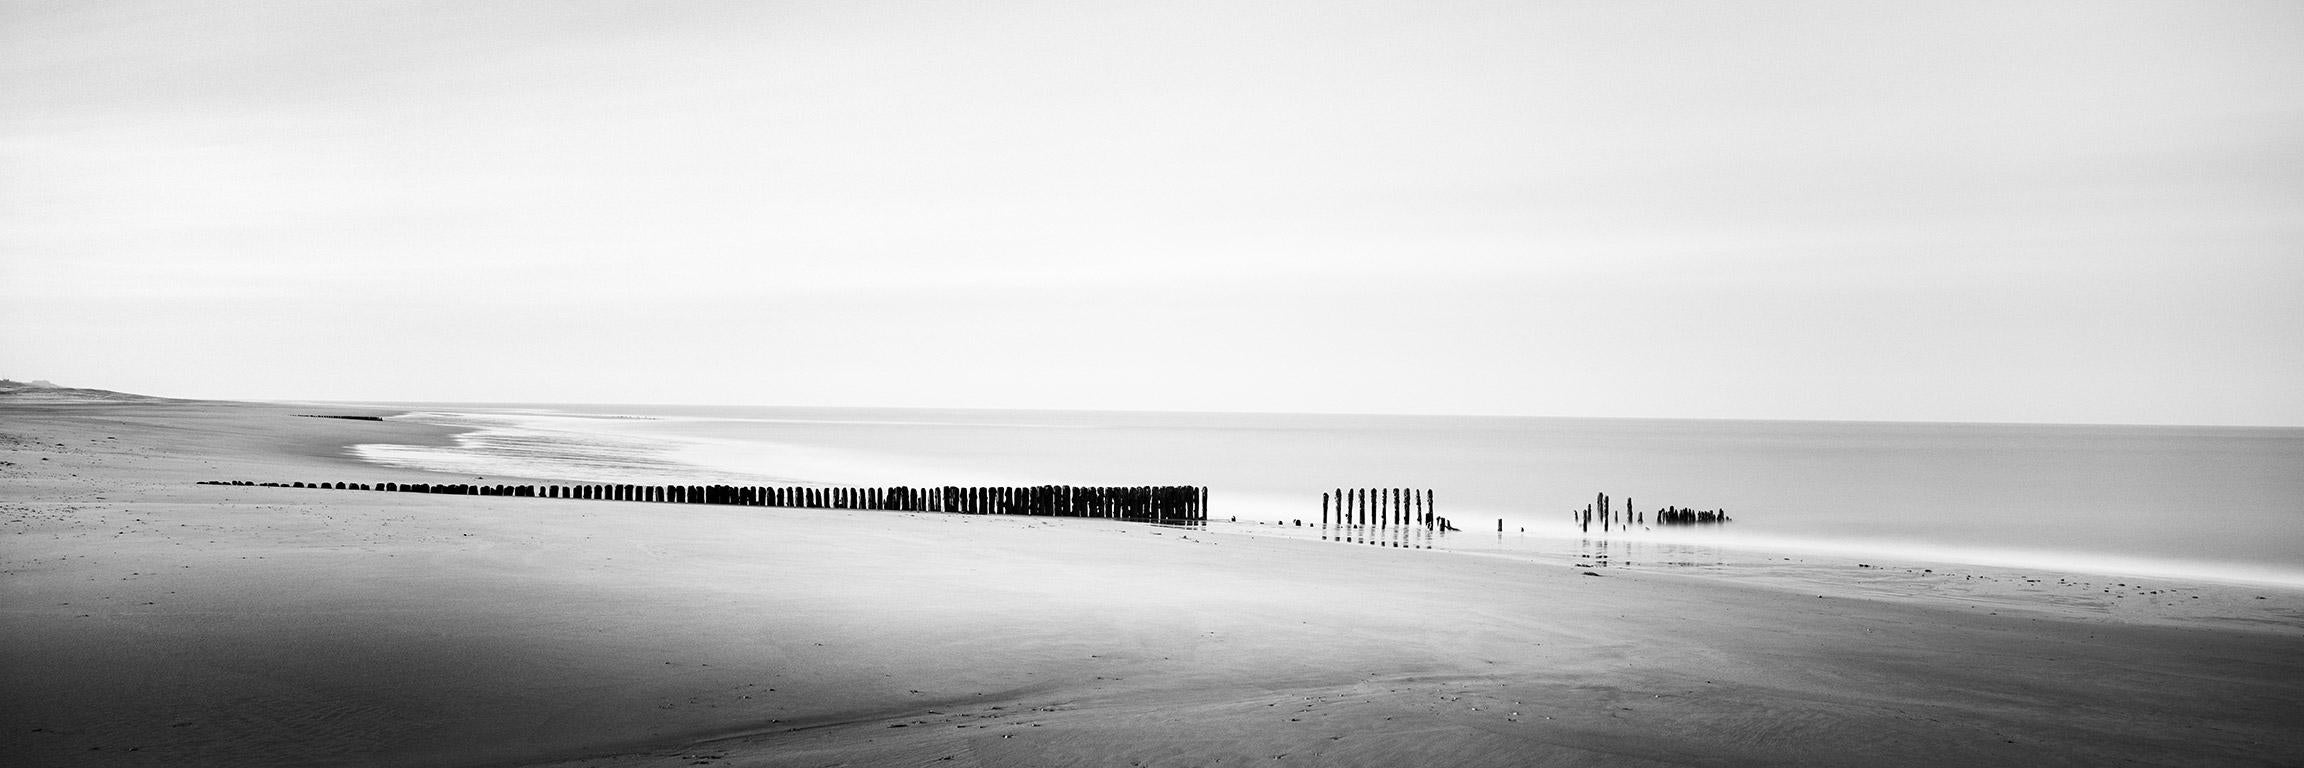 Landscape Photograph Gerald Berghammer - Broken Groyne, Beach, Sylt, Allemagne, tirage de photographies de paysages en noir et blanc